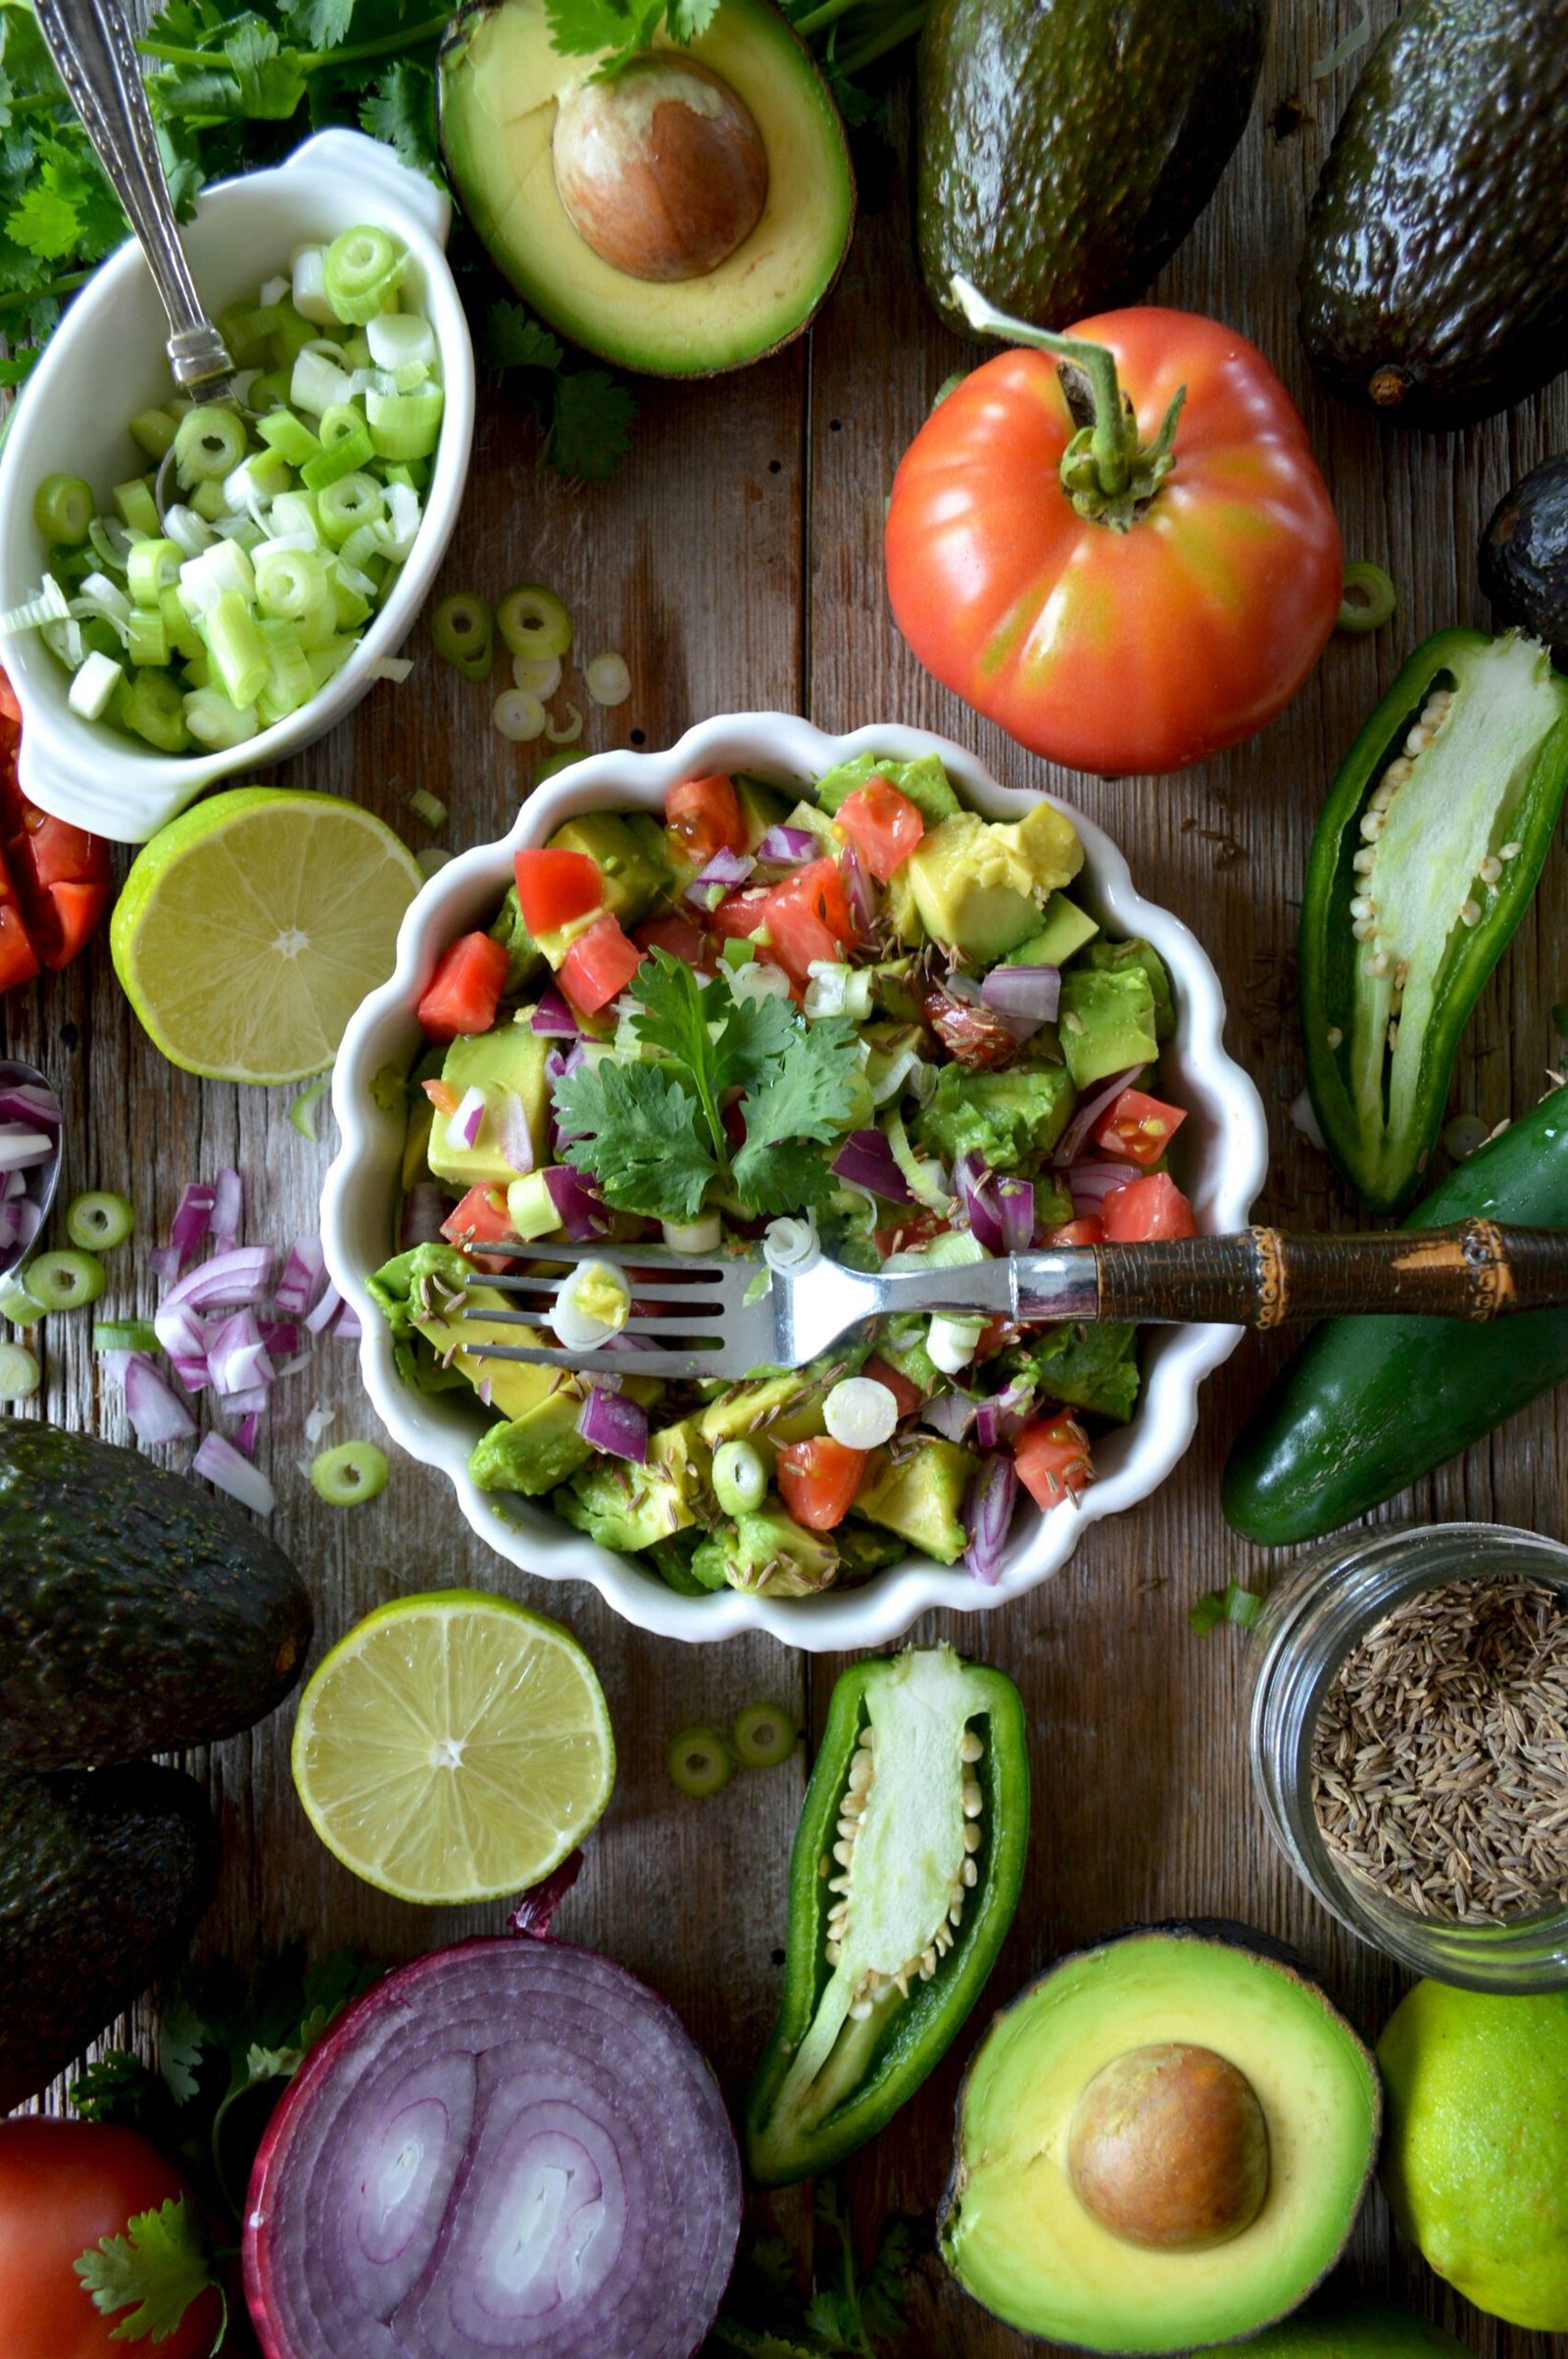 Easy Mediterranean Diet Meal Plan For Beginners 